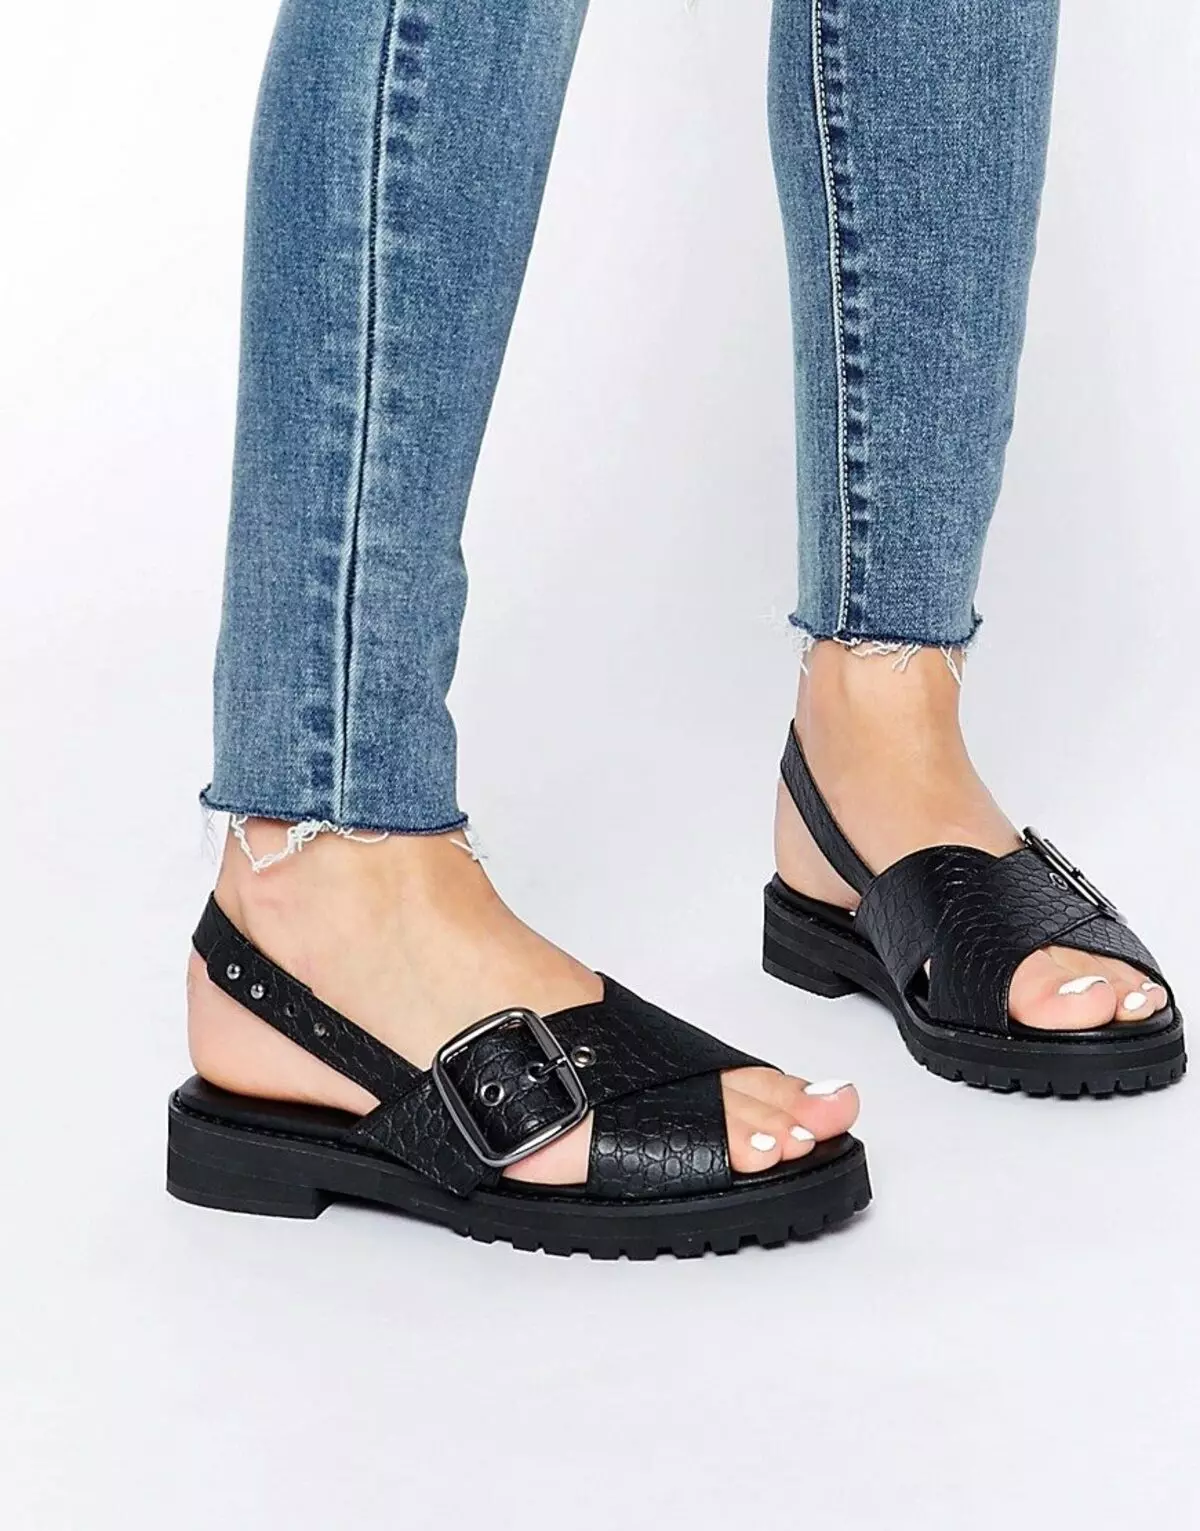 Tarakta tafin kafa sandals (76 photos): abin da ake kira, gaye bazara model a lokacin farin ciki da low soles, a kan wani sandan 2021 1745_75